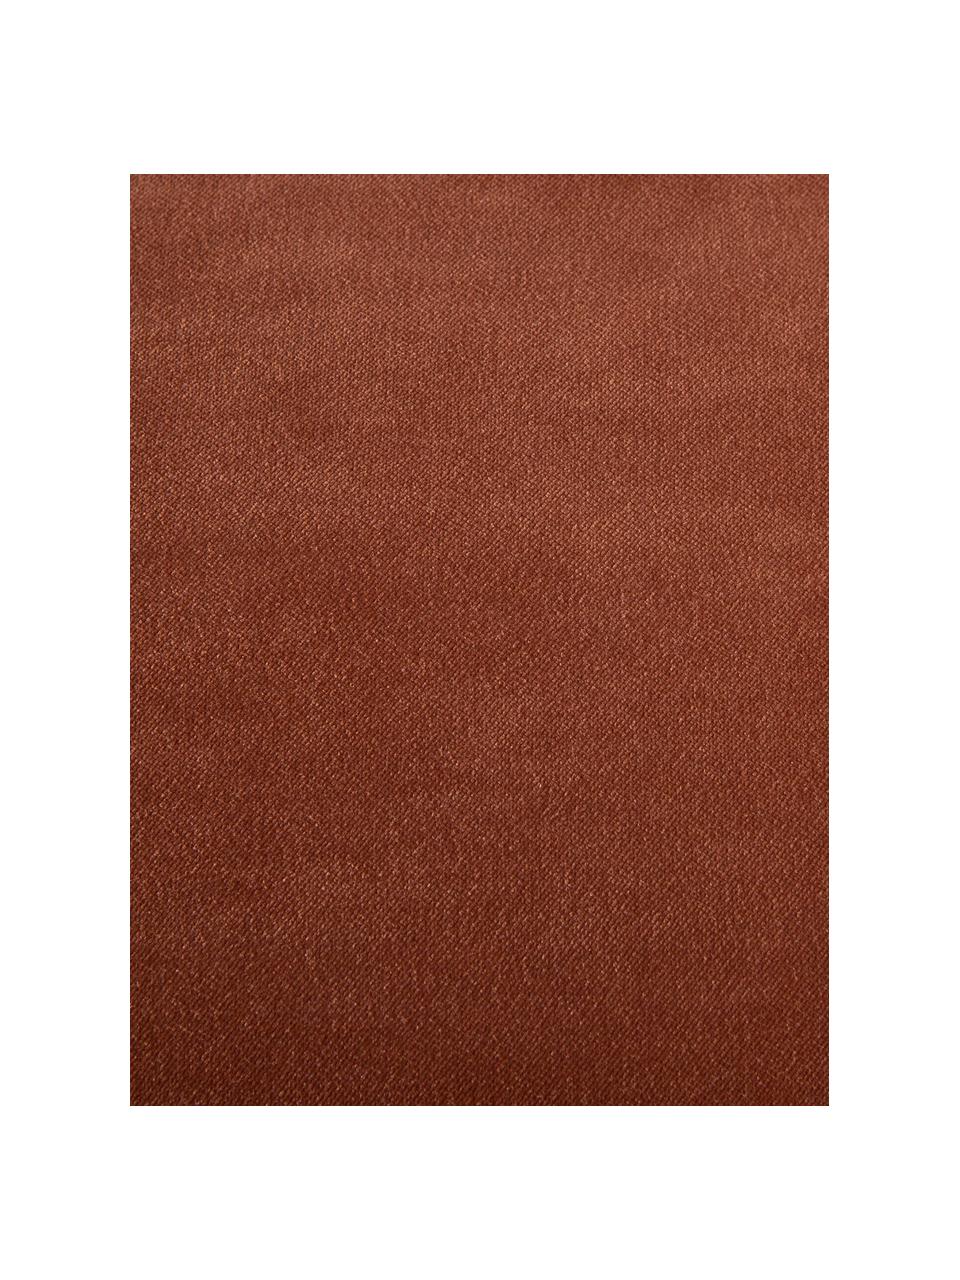 Samt-Sofa Magnolia (3-Sitzer) mit Metall-Füßen, Bezug: Samt (100% Polyester), Füße: Metall, pulverbeschichtet, Samt Rot, B 225 x T 94 cm